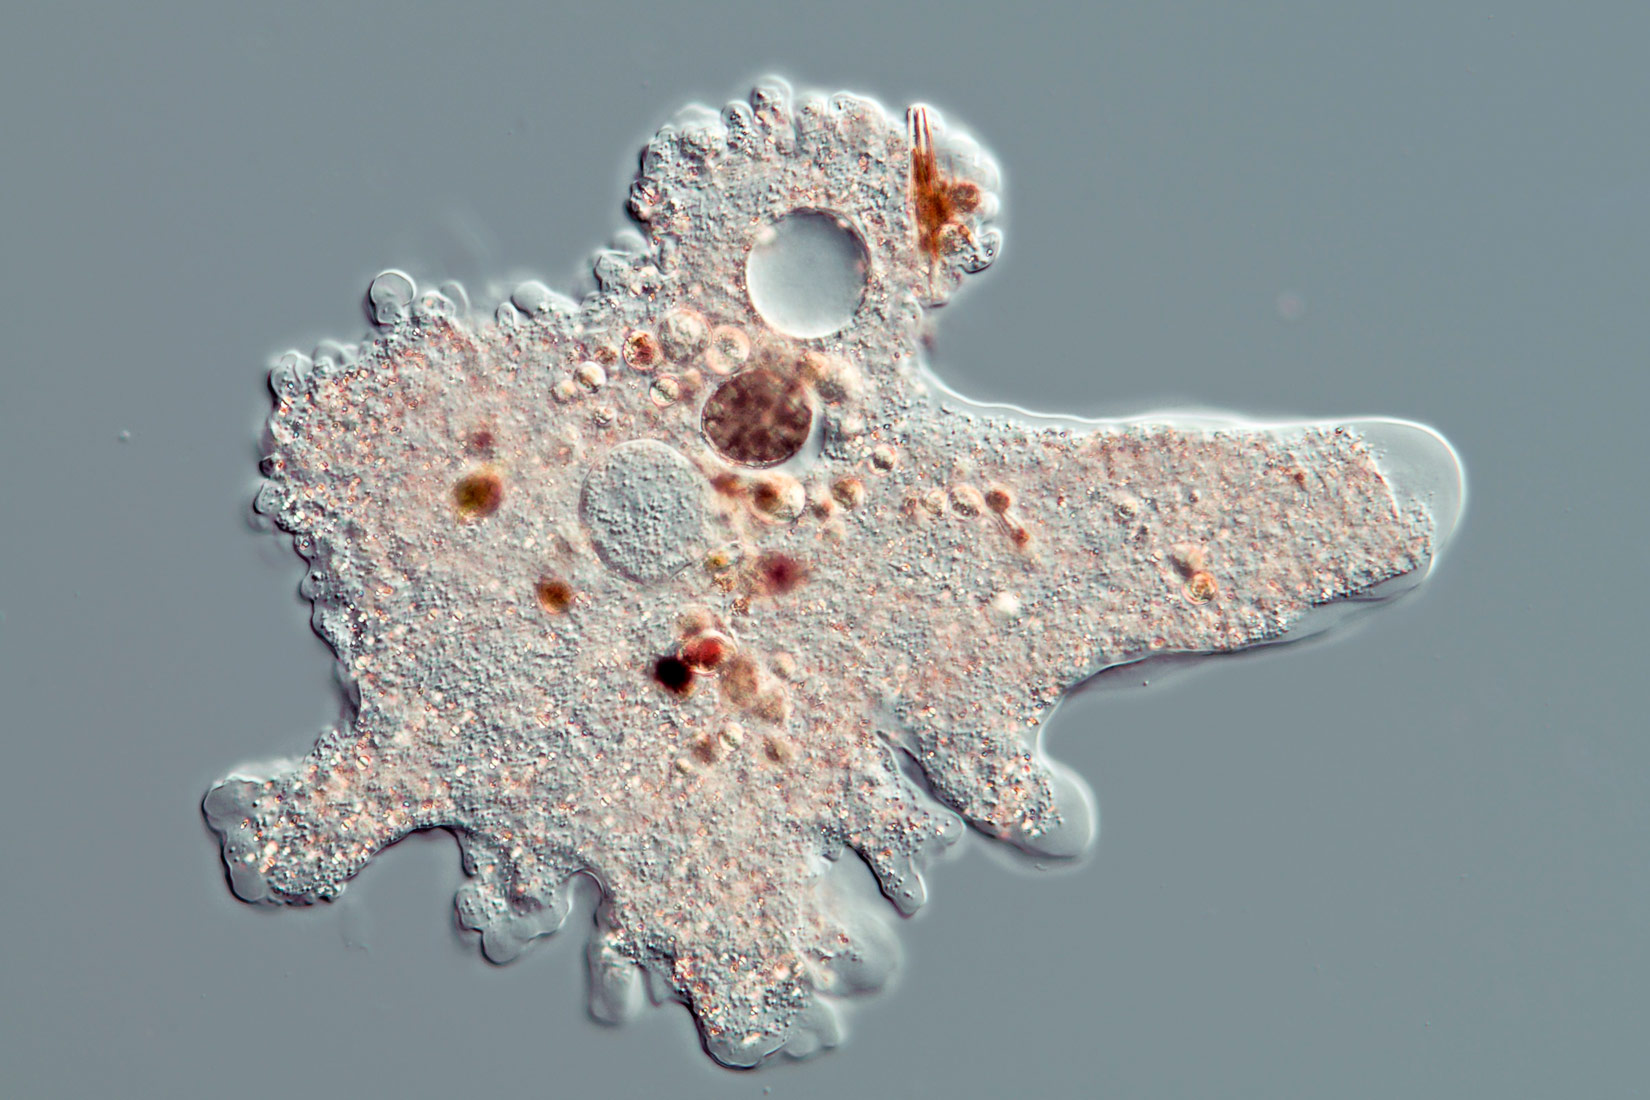 Ameba ima nepravilan oblik koji potječe od dinamičnim pseudopodija koji su zapravo izdanci membrane. Na ovoj slici ona podsjeća na ljudsku ruku gdje prste možemo slikovito poistovjetiti s pseudopodijima. Unutar stanice nalazi se mnoštvo granulica i struktura (staničnih organela).